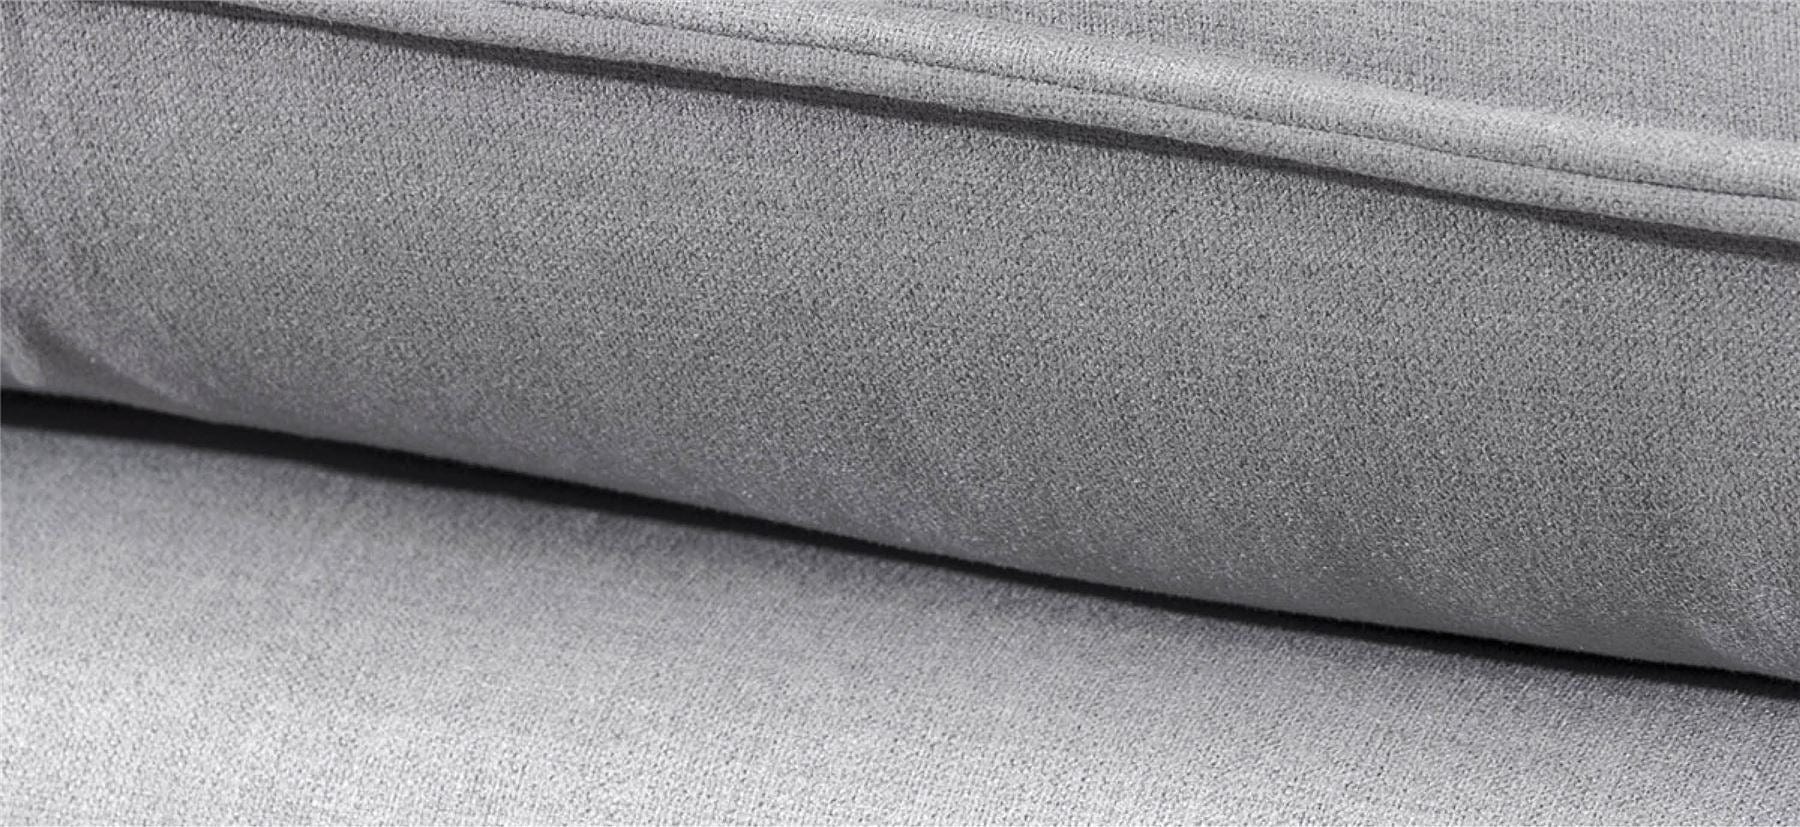 Quatropi Rachel Luxury L Shape Corner Modular Sofa Many Fabrics 3.35 x 1.6m